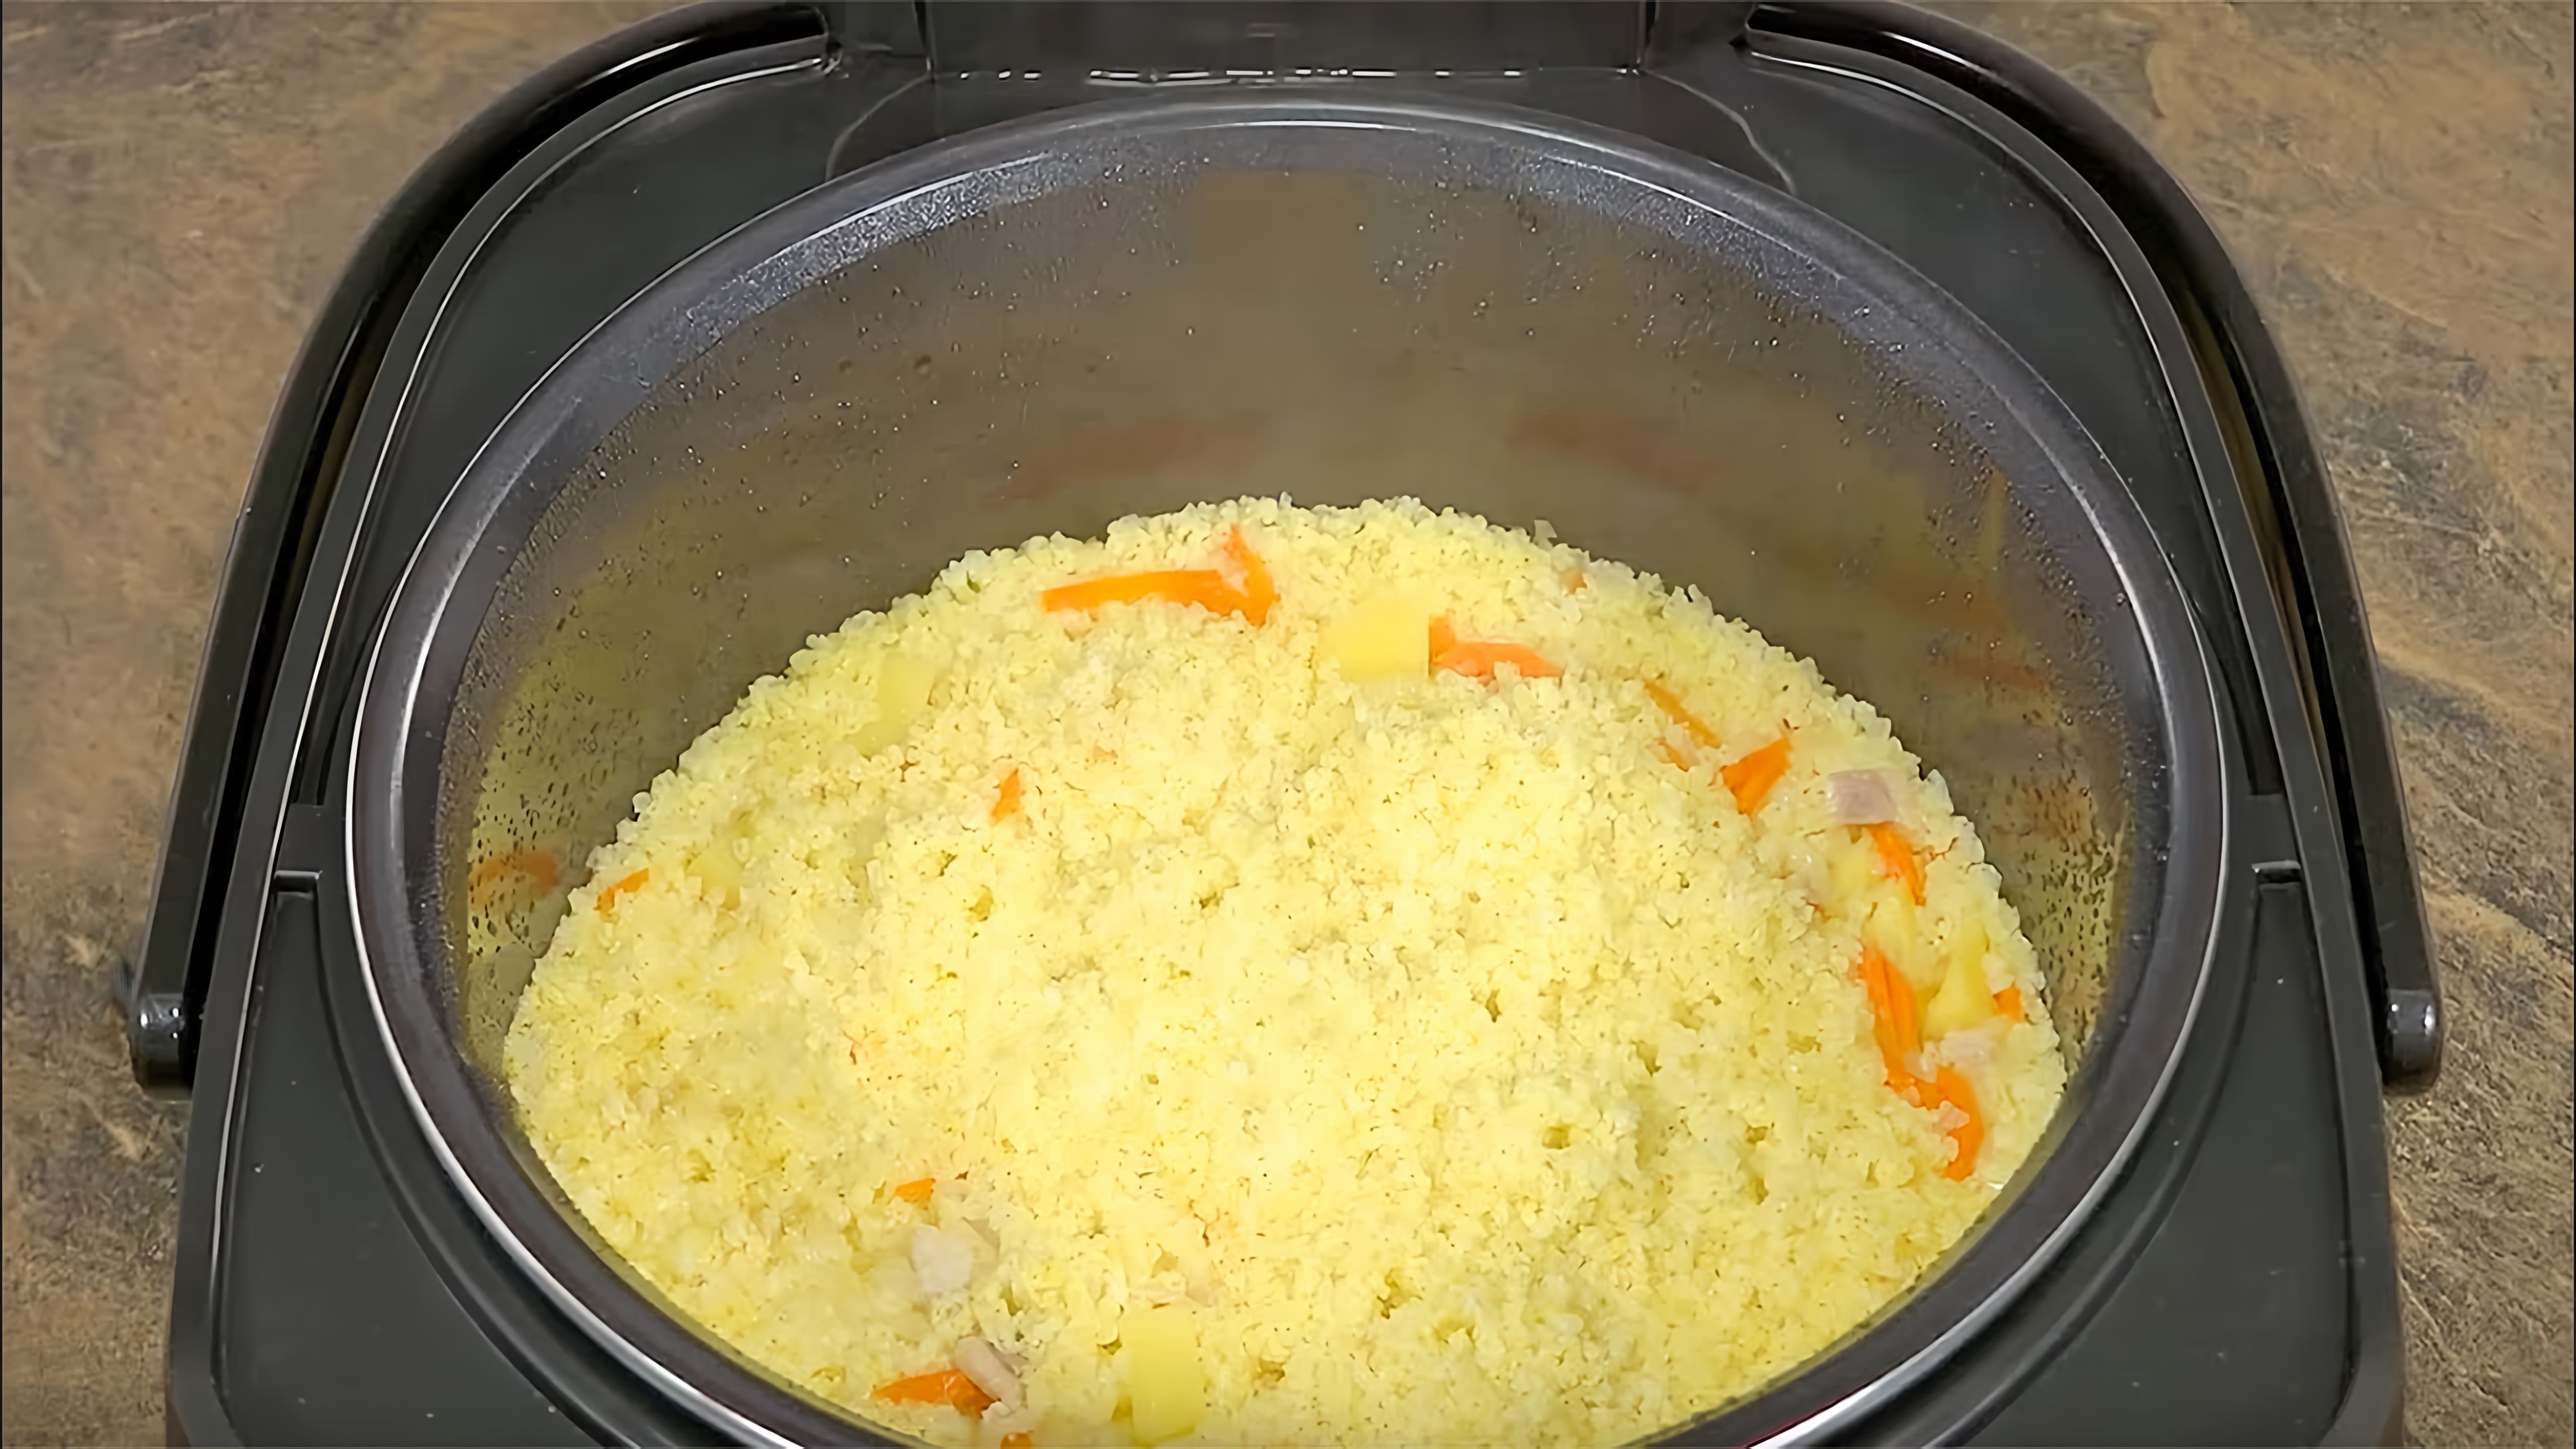 В этом видео показаны три рецепта ужинов, которые можно приготовить в мультиварке